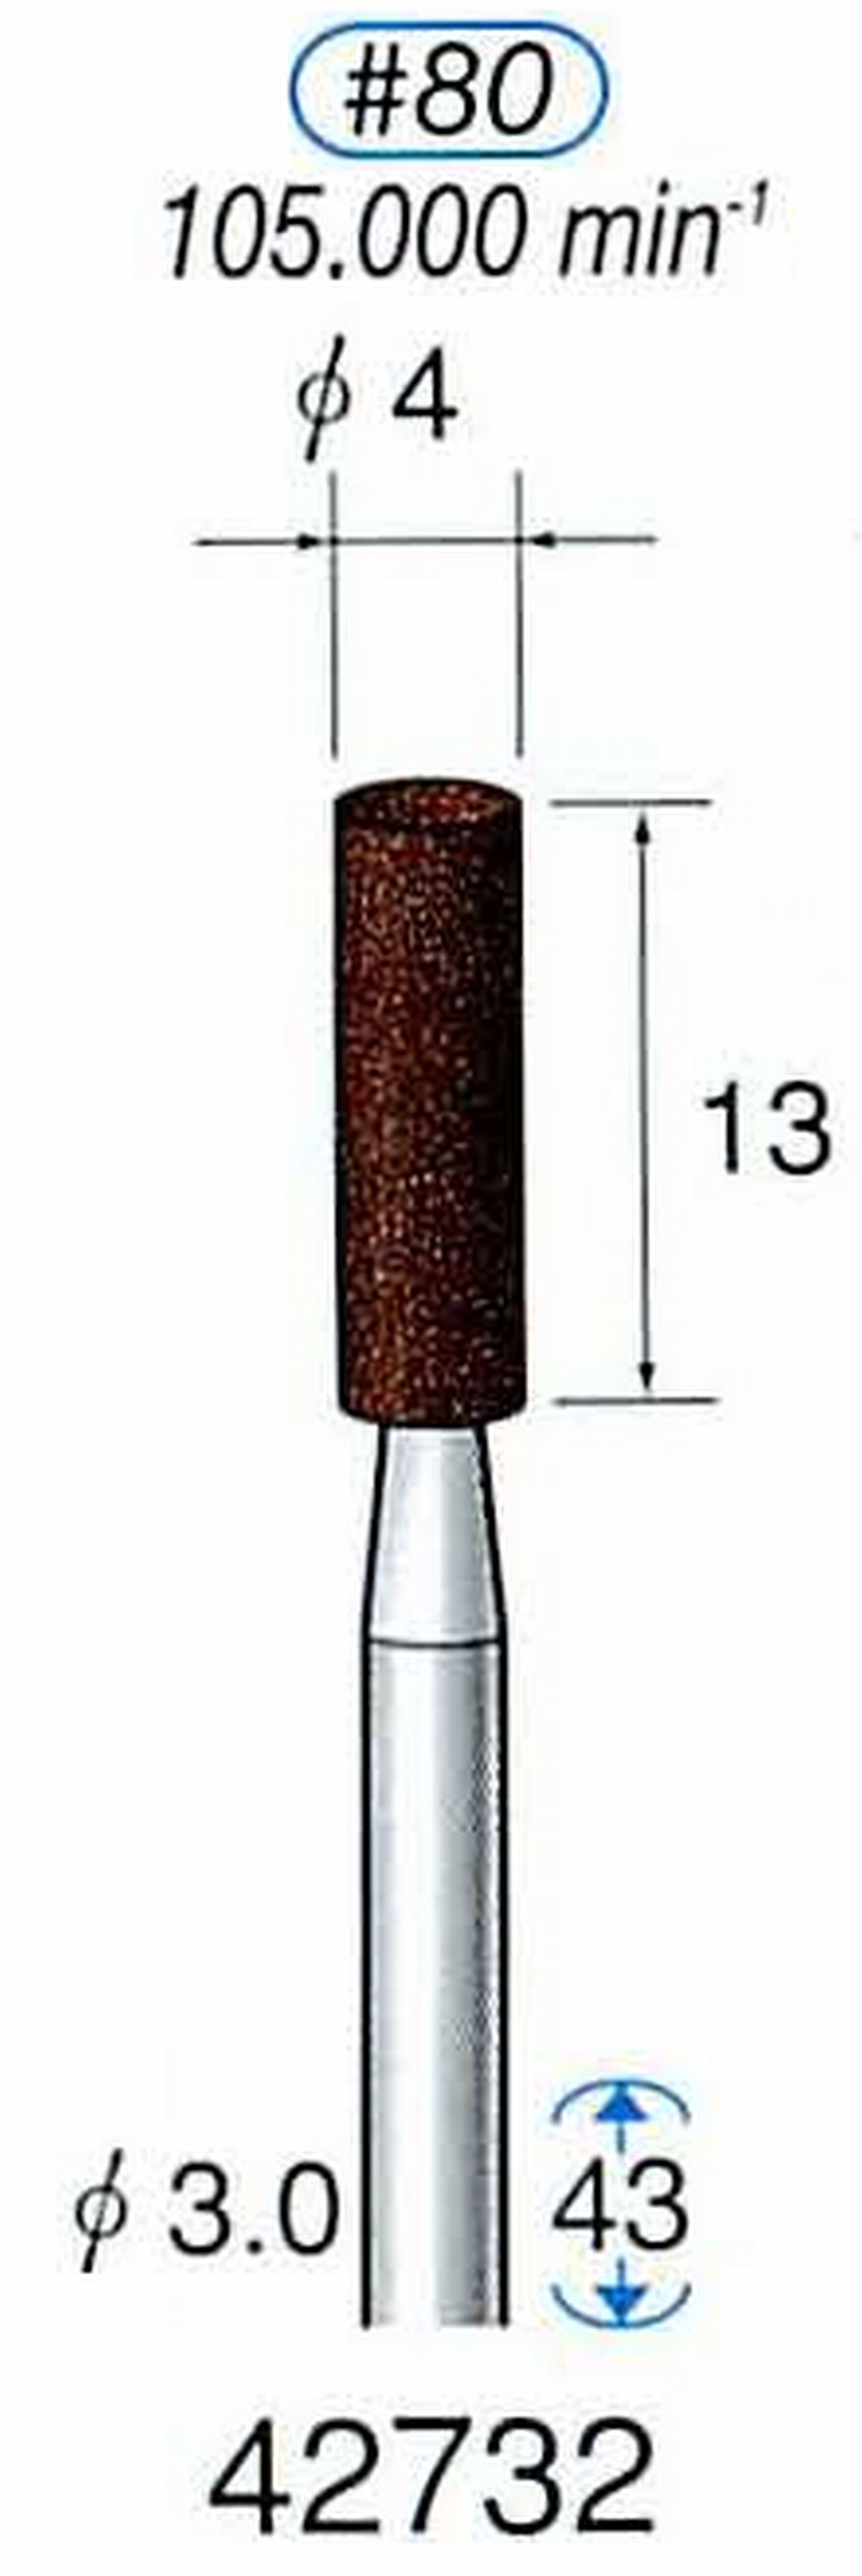 ナカニシ/NAKANISHI 軸付砥石(A・WA砥粒) ブラウン砥石 軸径(シャンク) φ3.0mm 42732